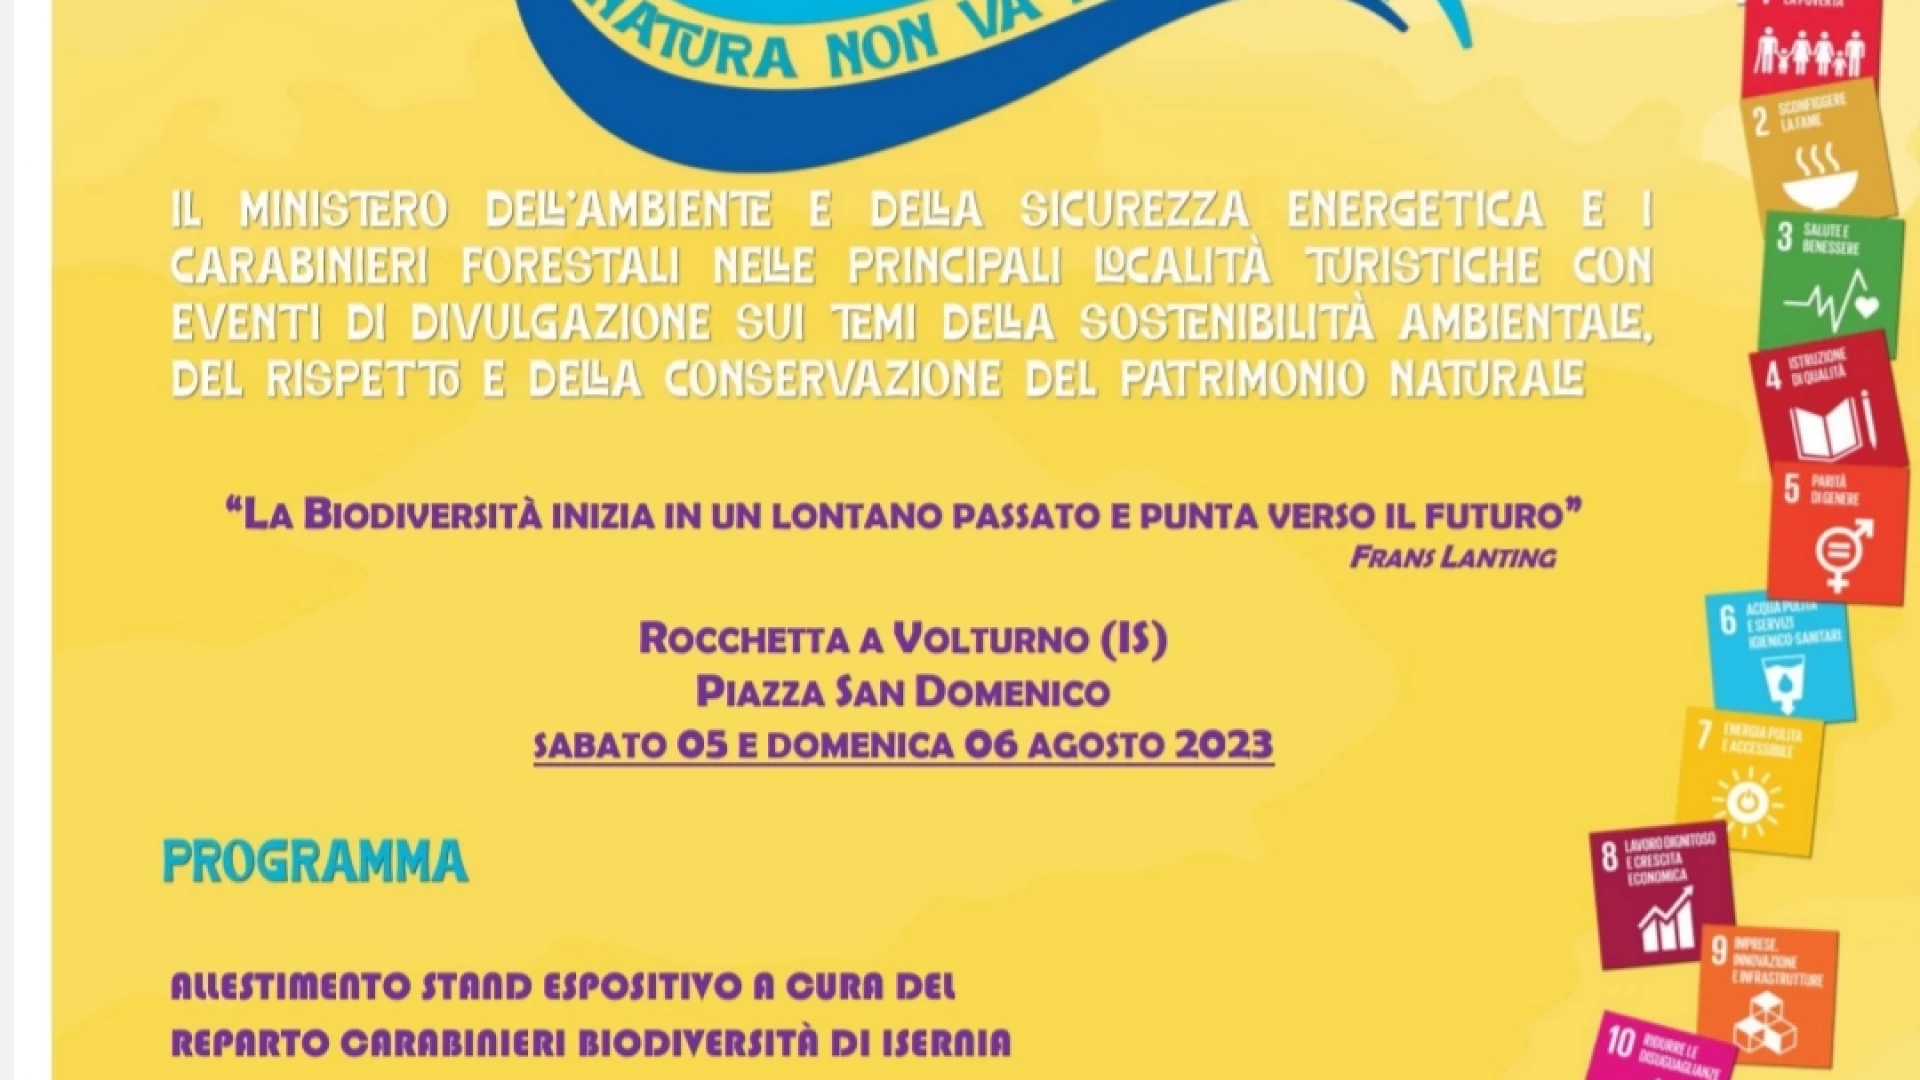 "La Natura non va in vacanza", il primo appuntamento oggi a Rocchetta a Volturno.